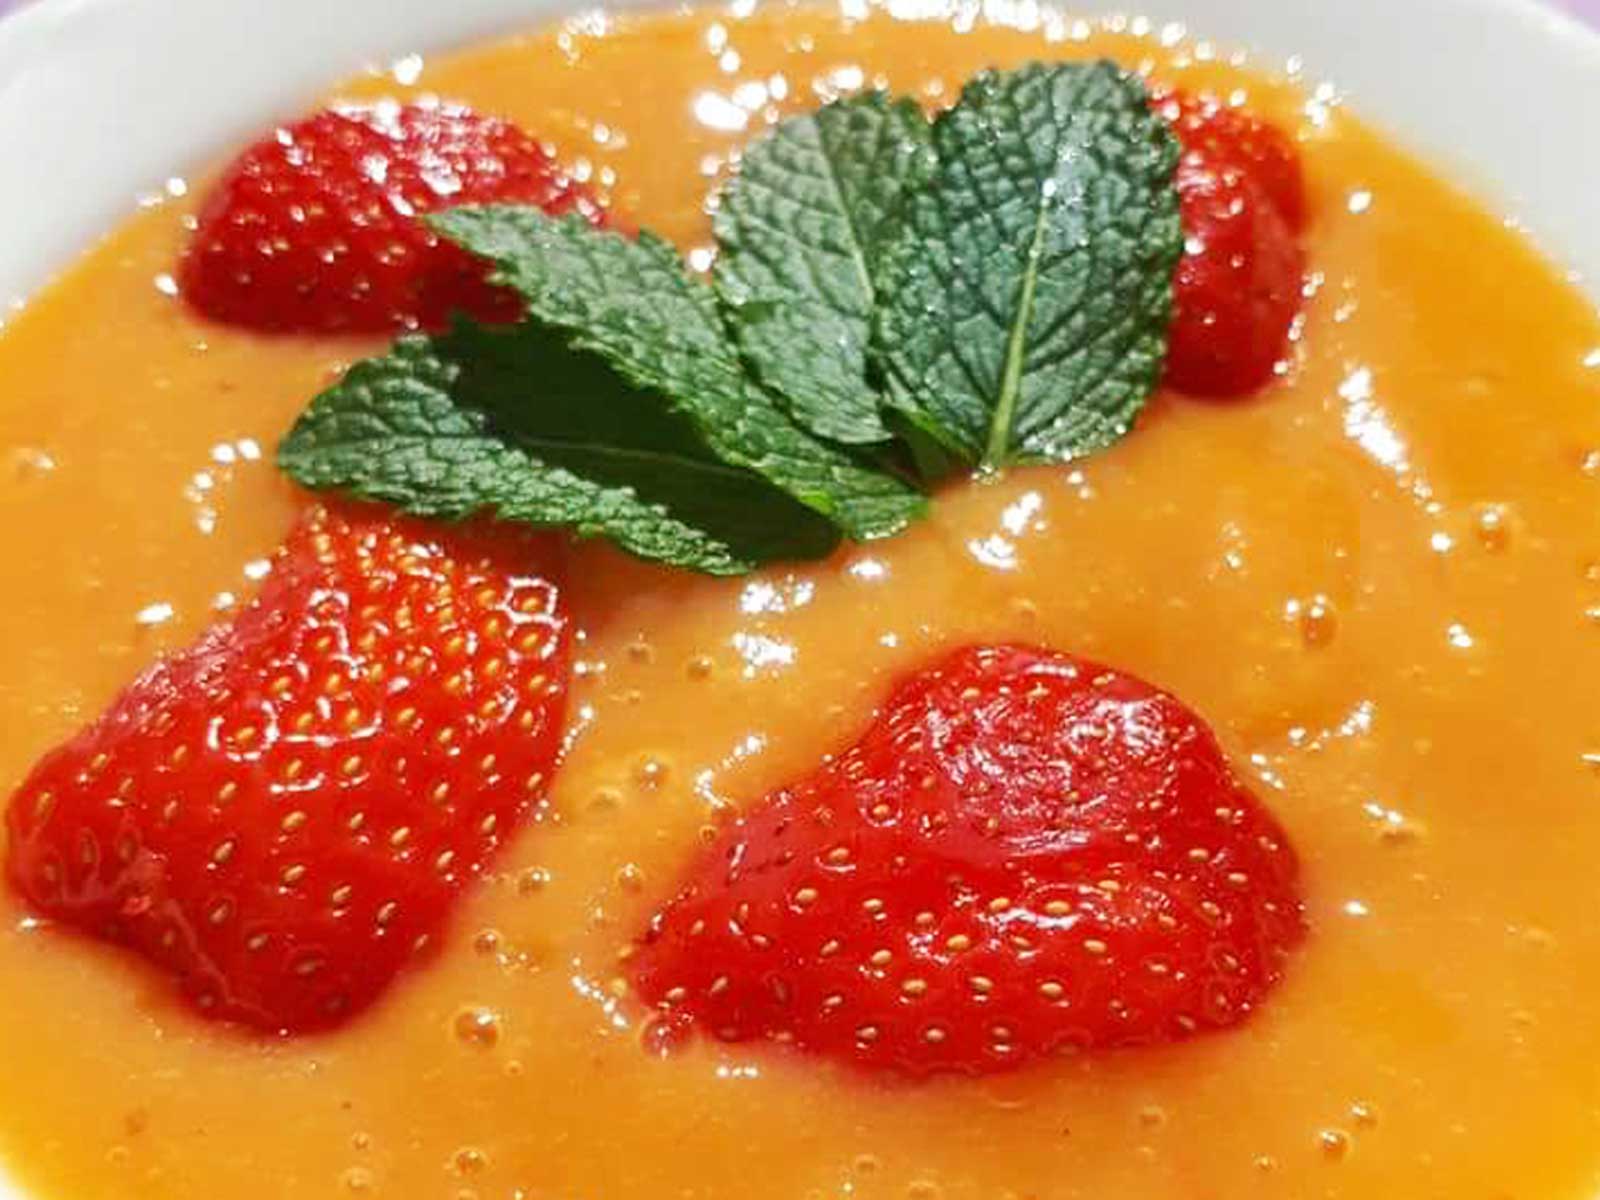 Zlim recept voor mango aardbeien soep